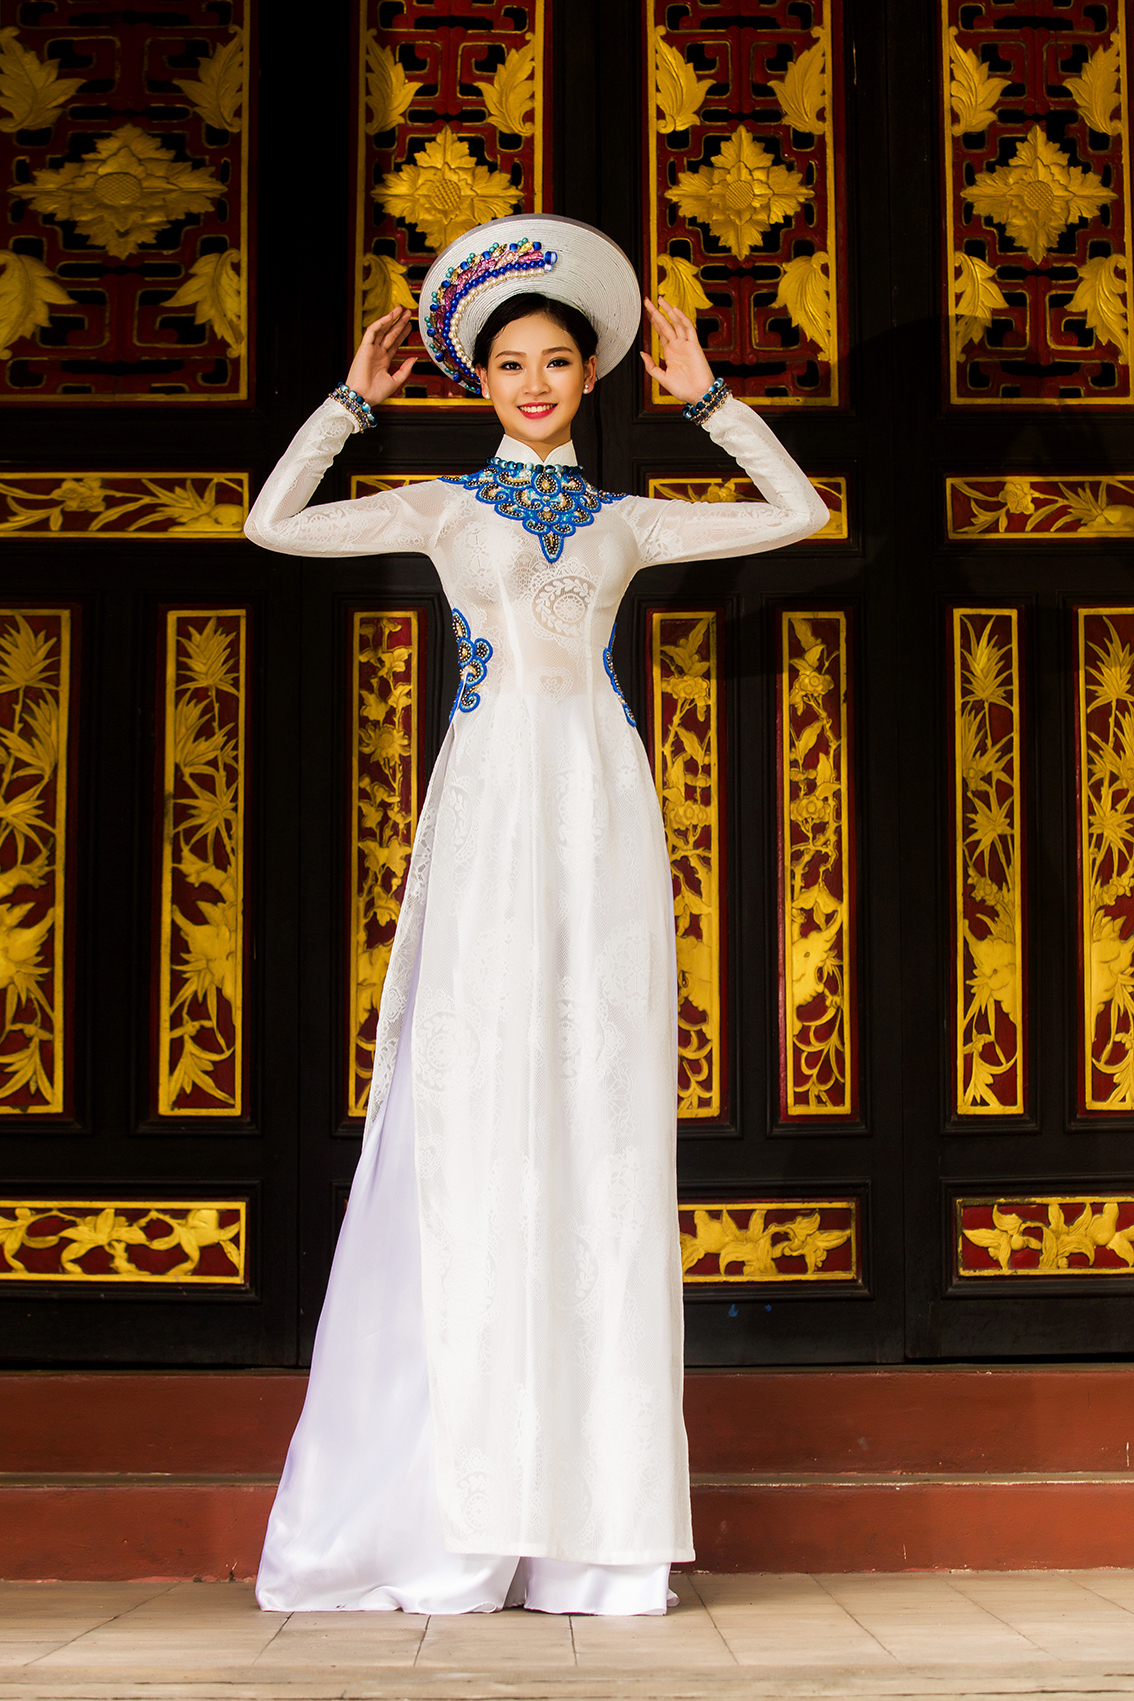 Ba chị em Phạm Thùy Linh đằm thắm trong trang phục áo dài